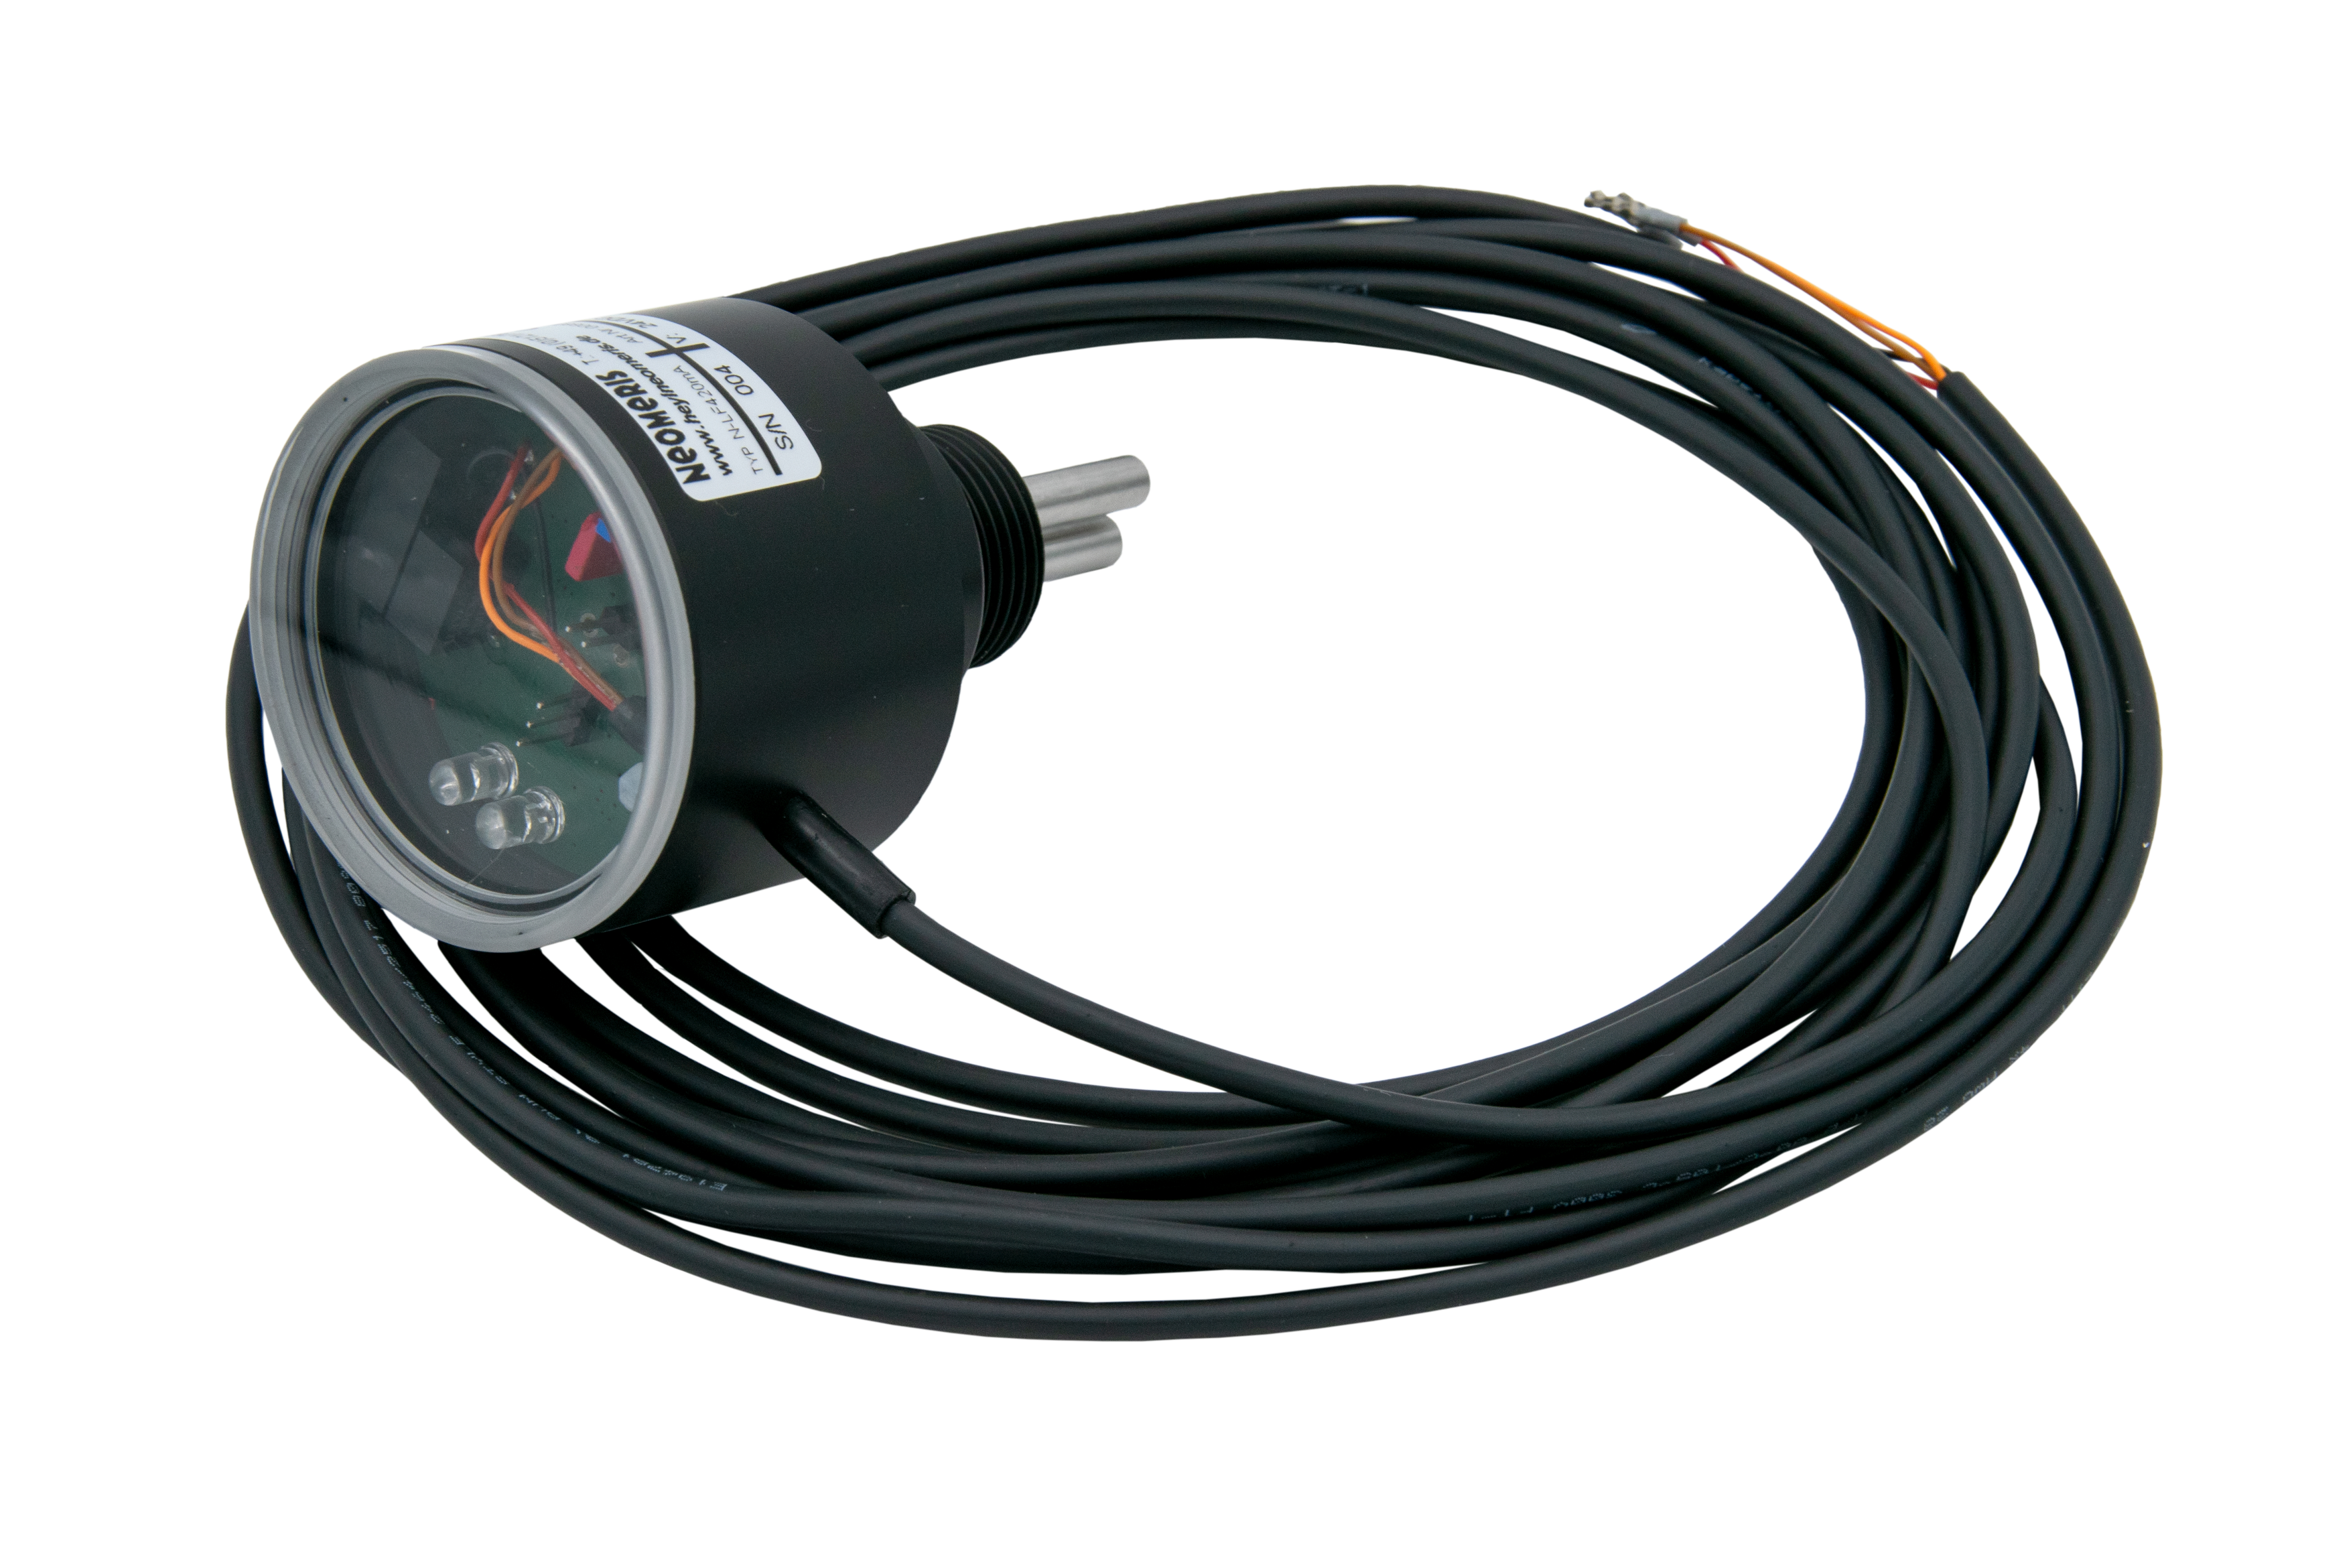 N-LF420 Leitfähigkeitsmessgerät mit 4-20mA Ausgang und Messbereich gemäß Ihren Anforderungen, LED Anzeige und Einschraubgewinde nach Wunsch